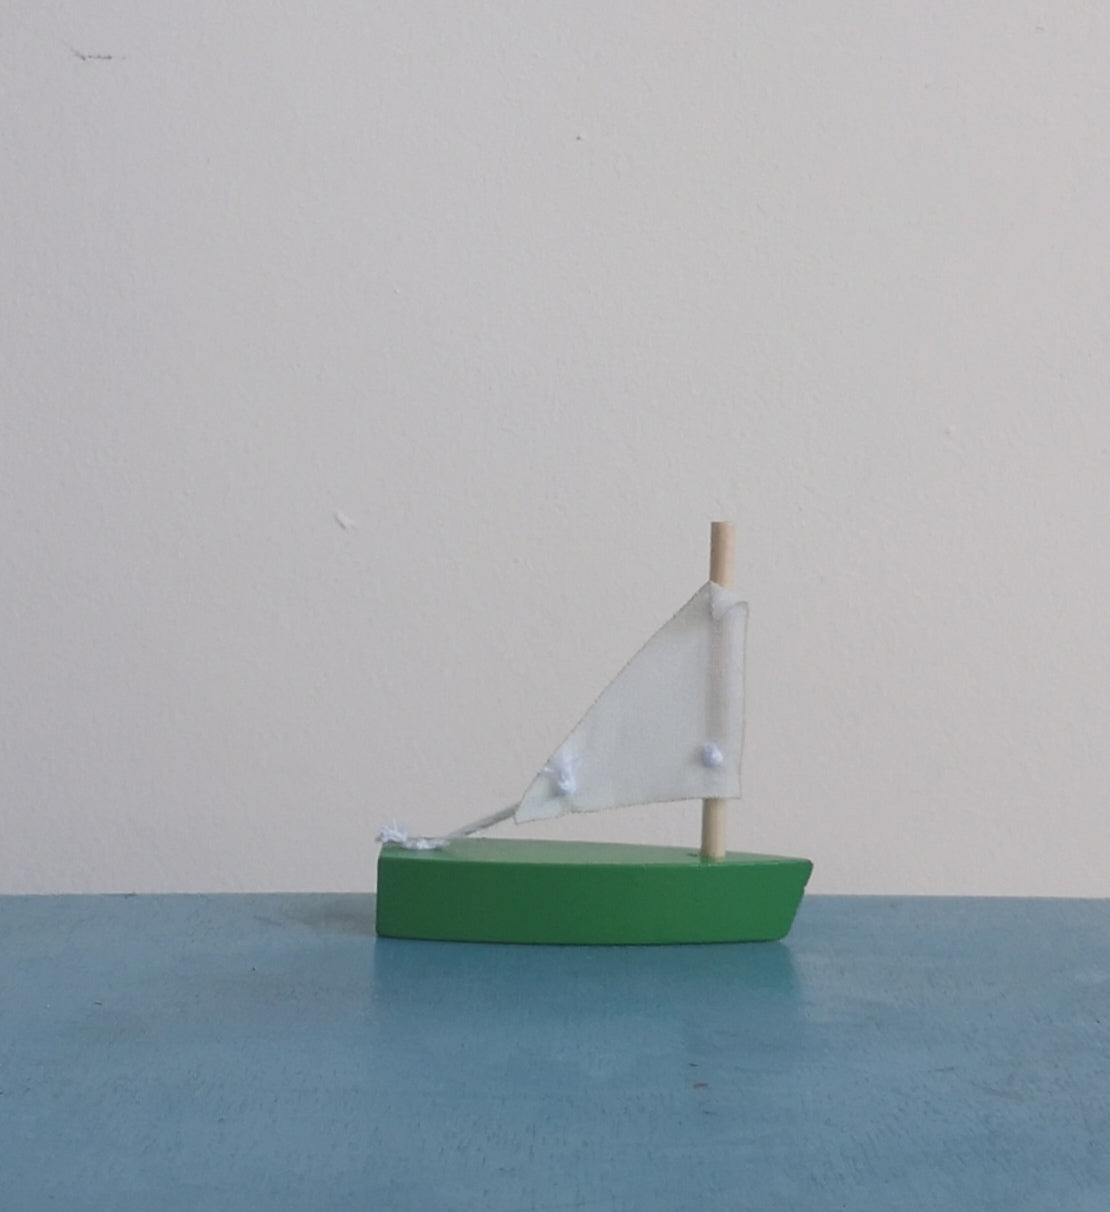 Mini sail boat